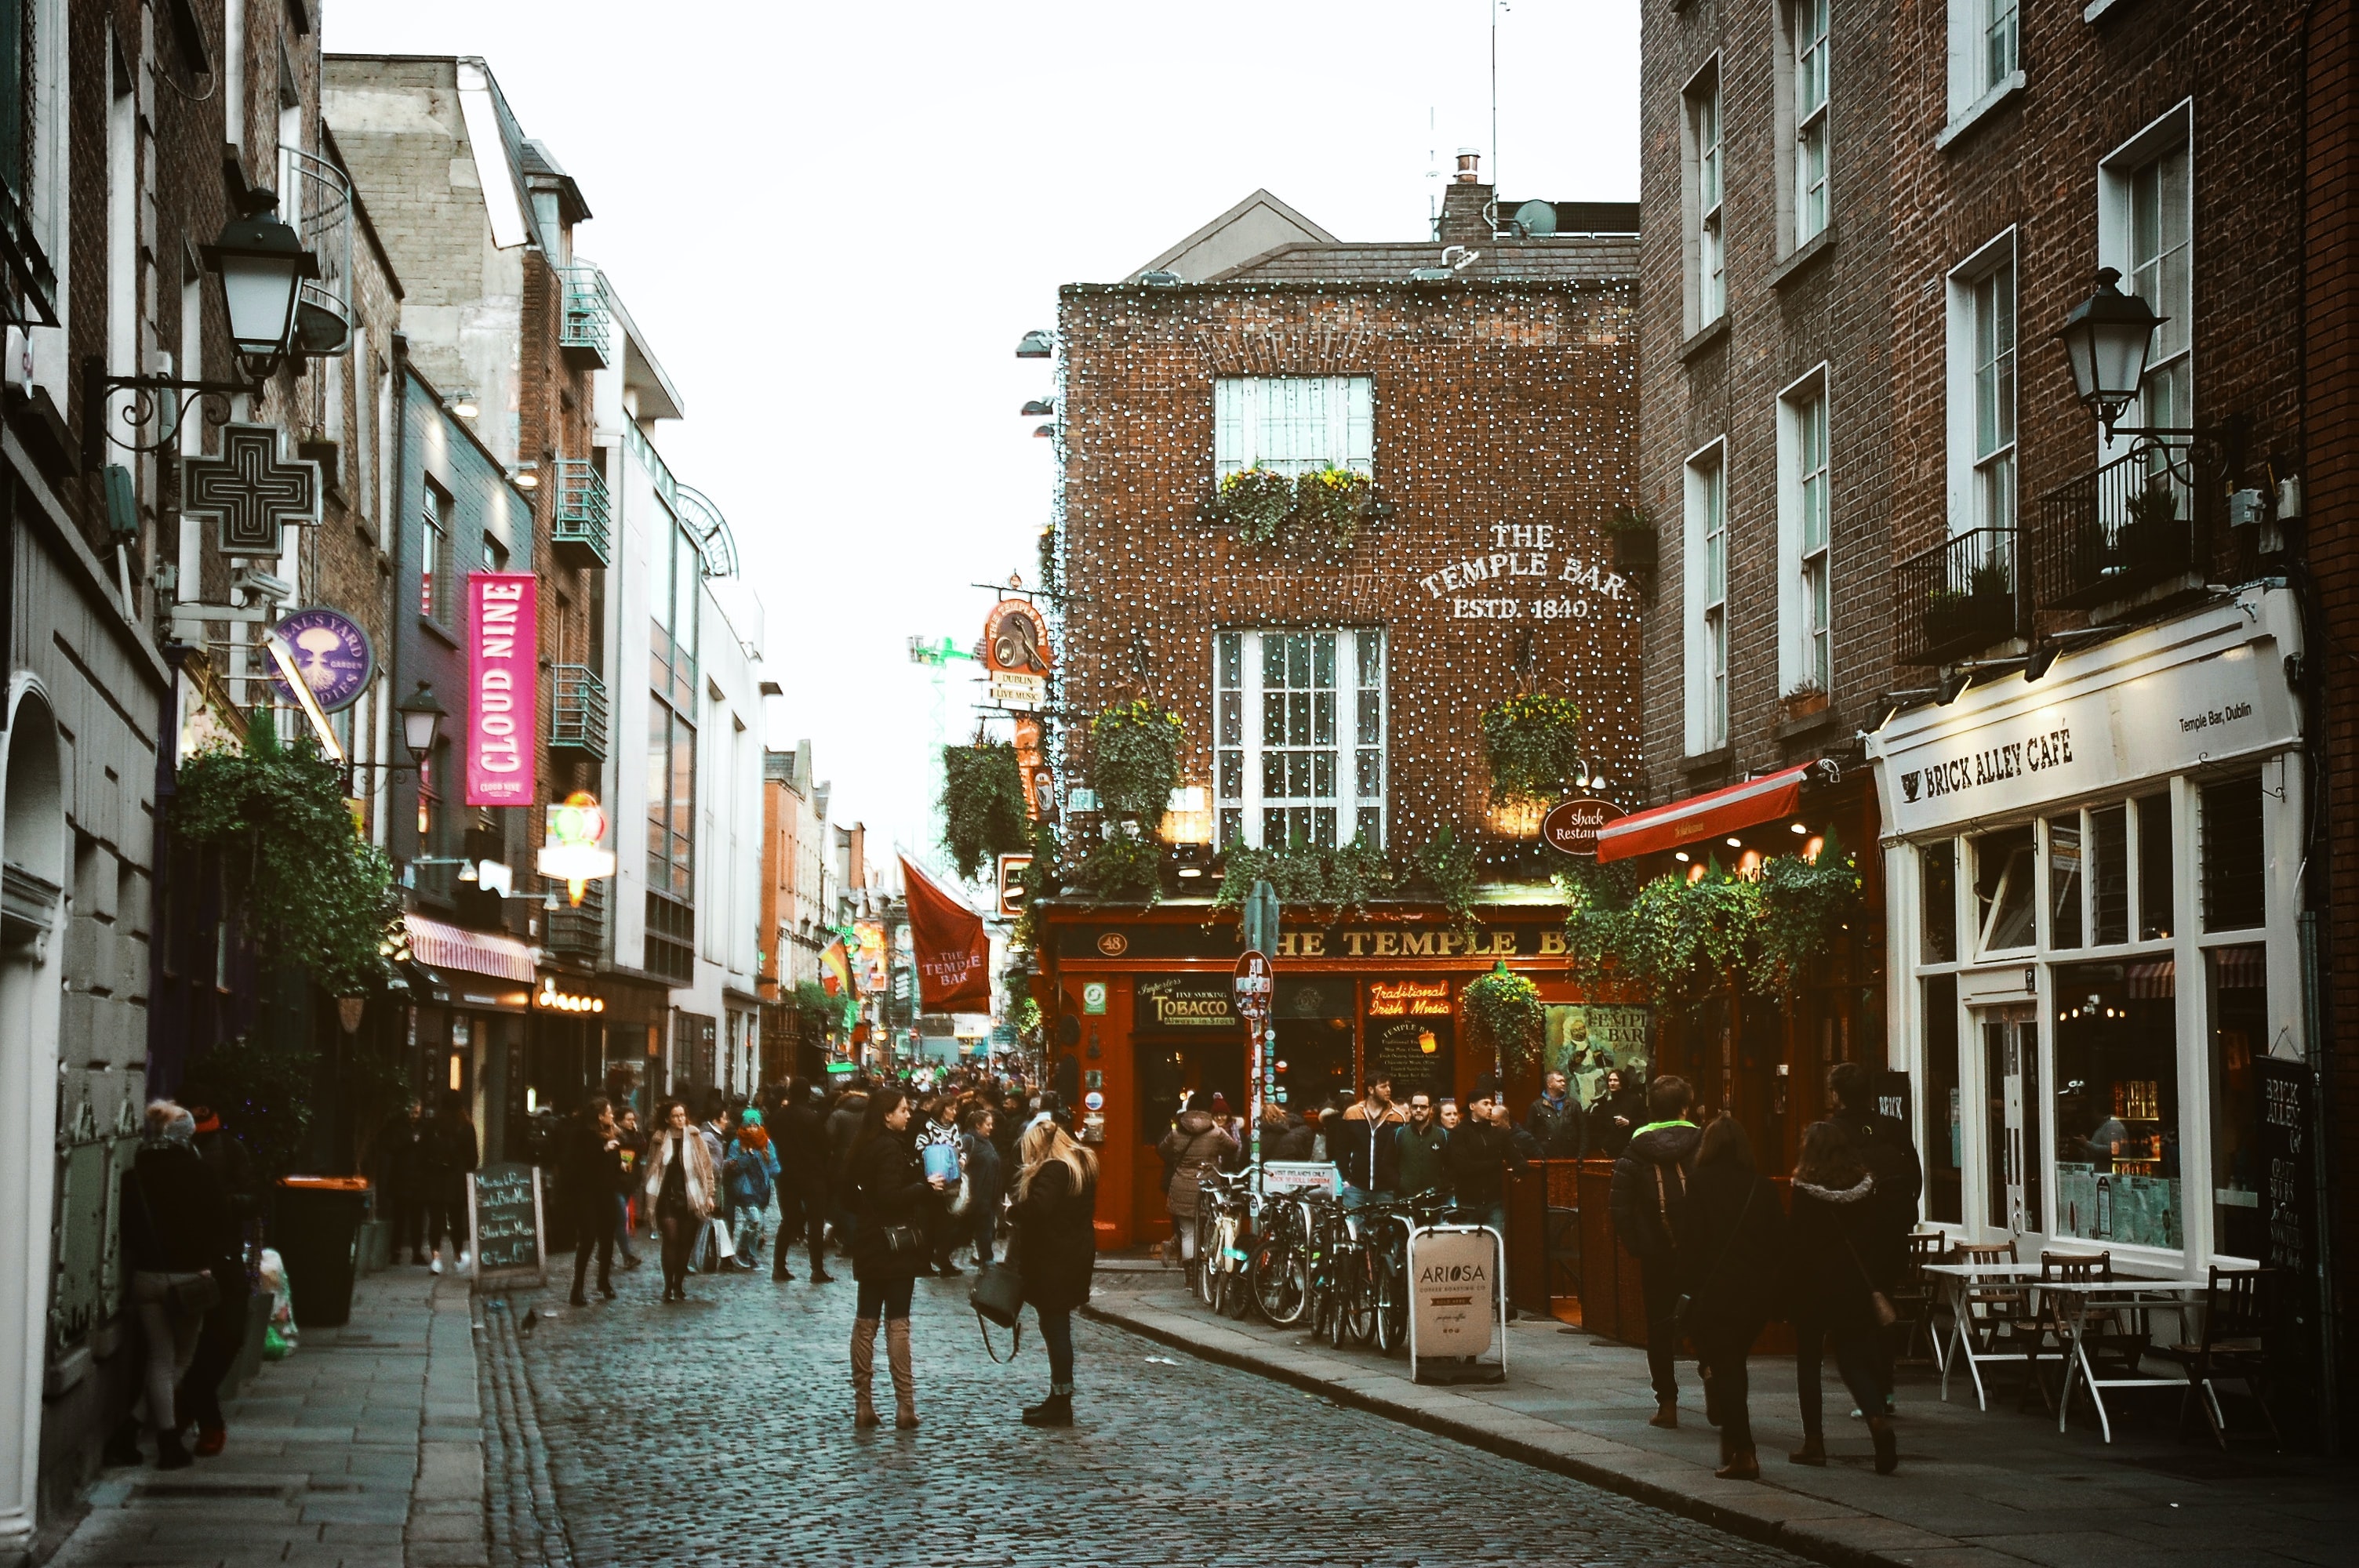 Saiba por que a Irlanda é uma das melhores opções para aprender inglês em 6 meses 